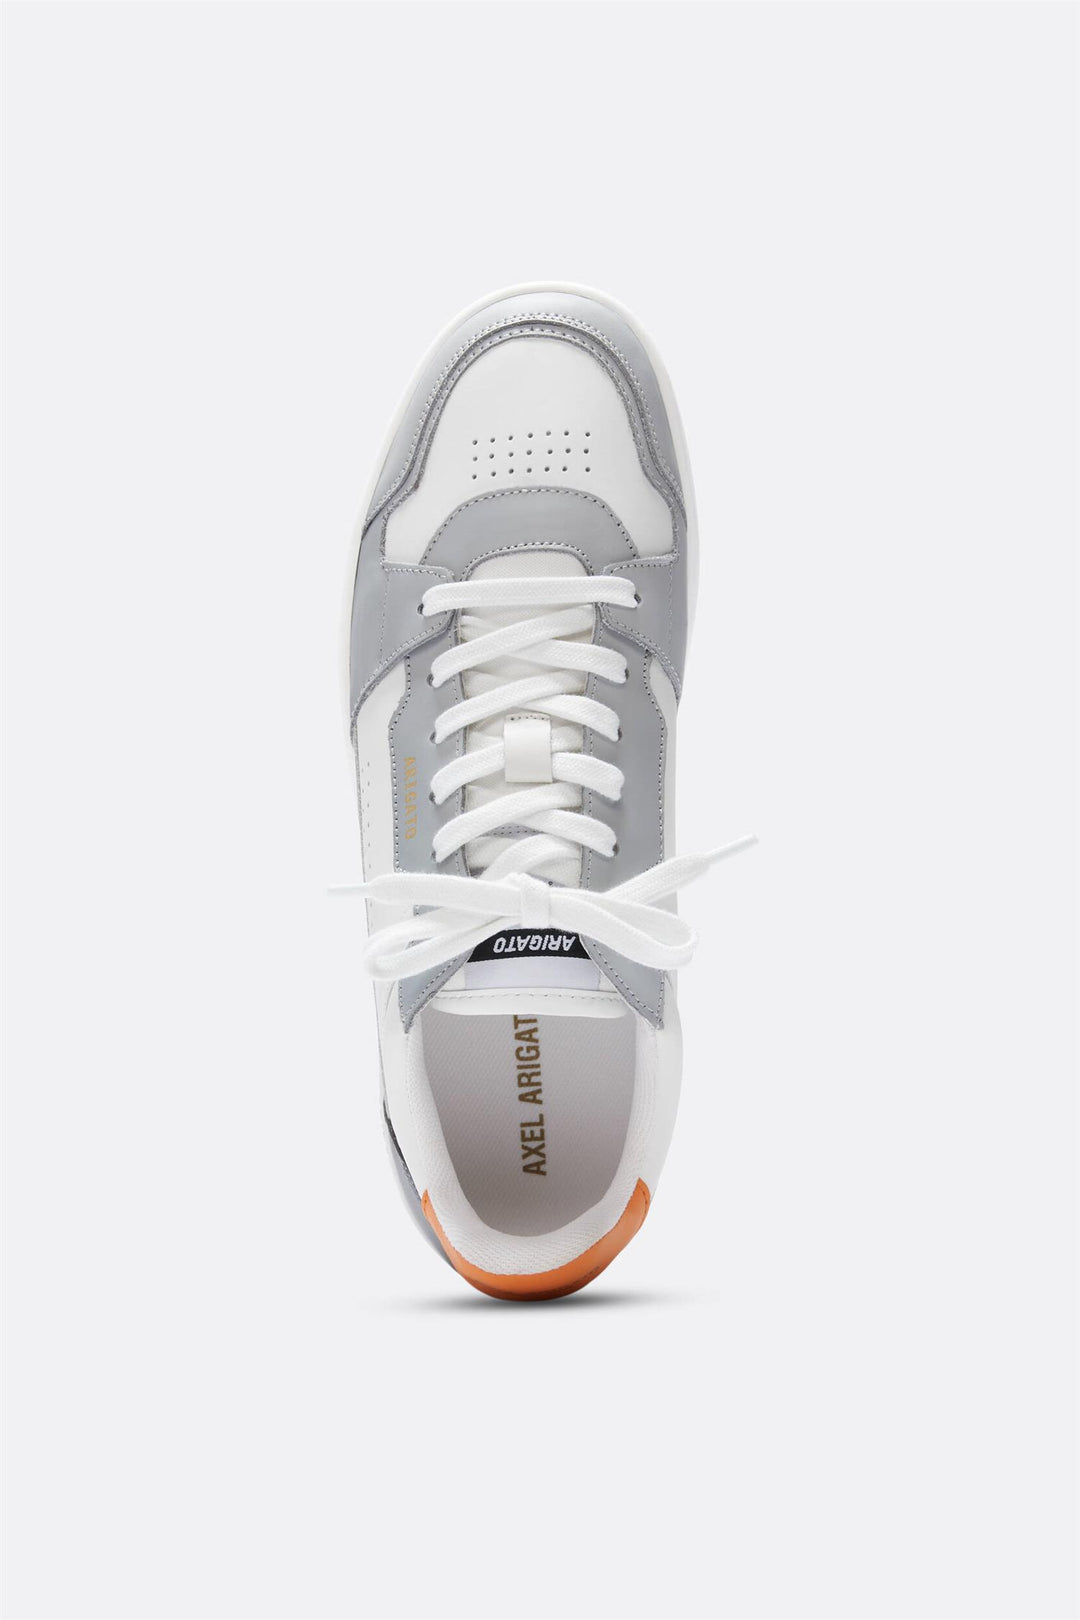 M Dice Lo Sneaker White/Grey